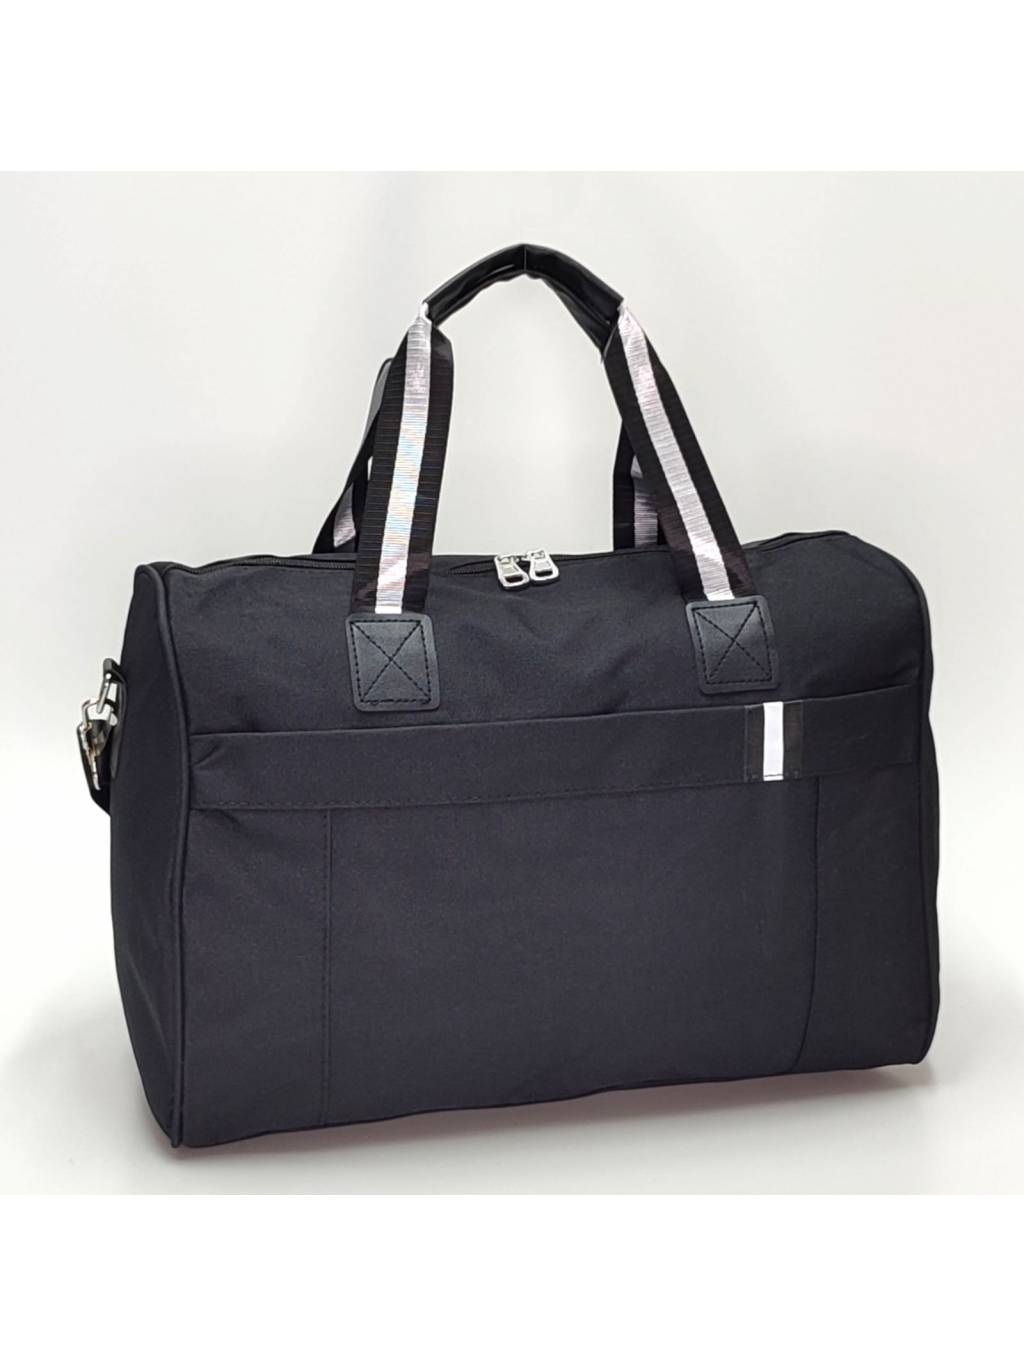 Cestovná taška B7047 L čierna www.kabelky vypredaj (4)